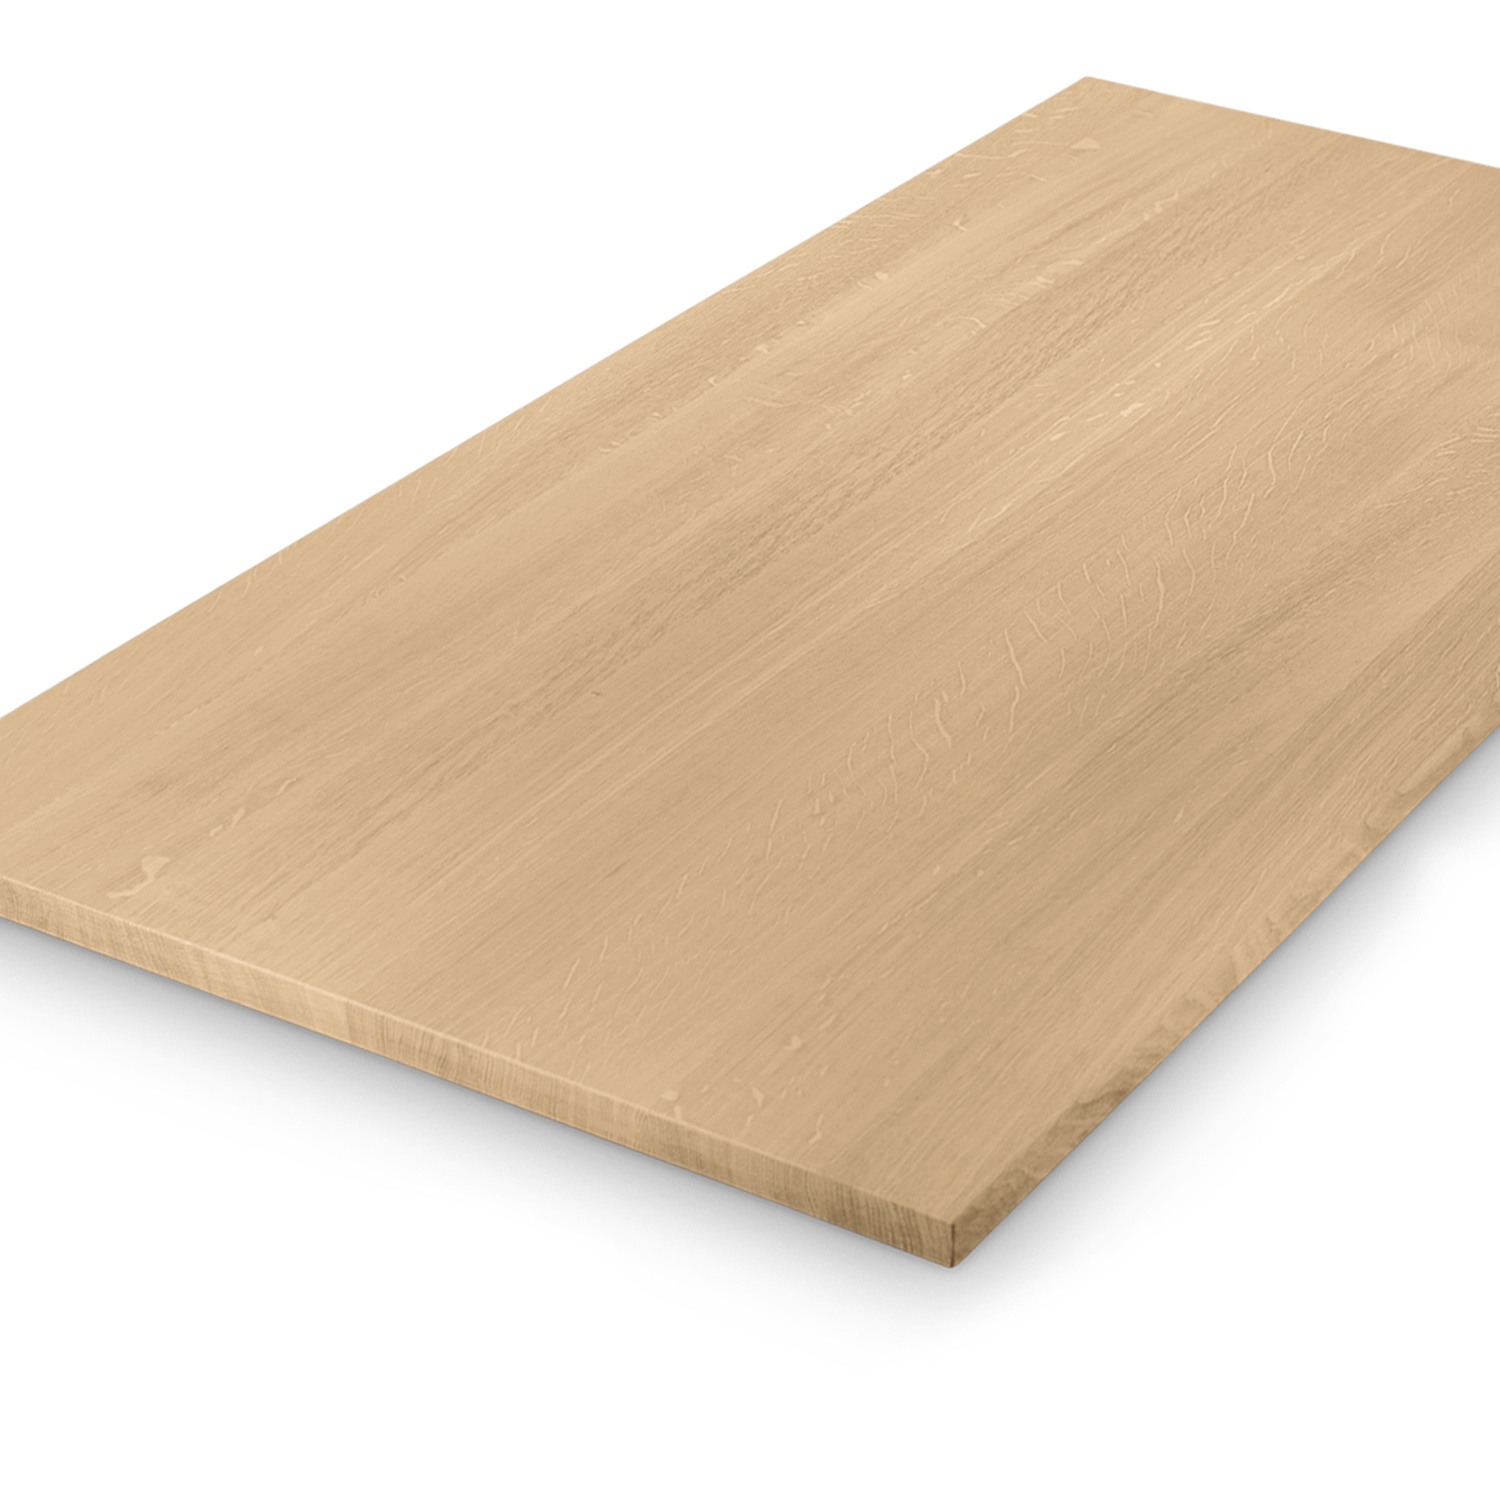  Eiken tafelblad op maat - 2,7 cm dik (1-laag) - foutvrij Europees eikenhout - met brede lamellen (circa 10-12 cm) - verlijmd kd 8-12% - 50-120x50-248 cm